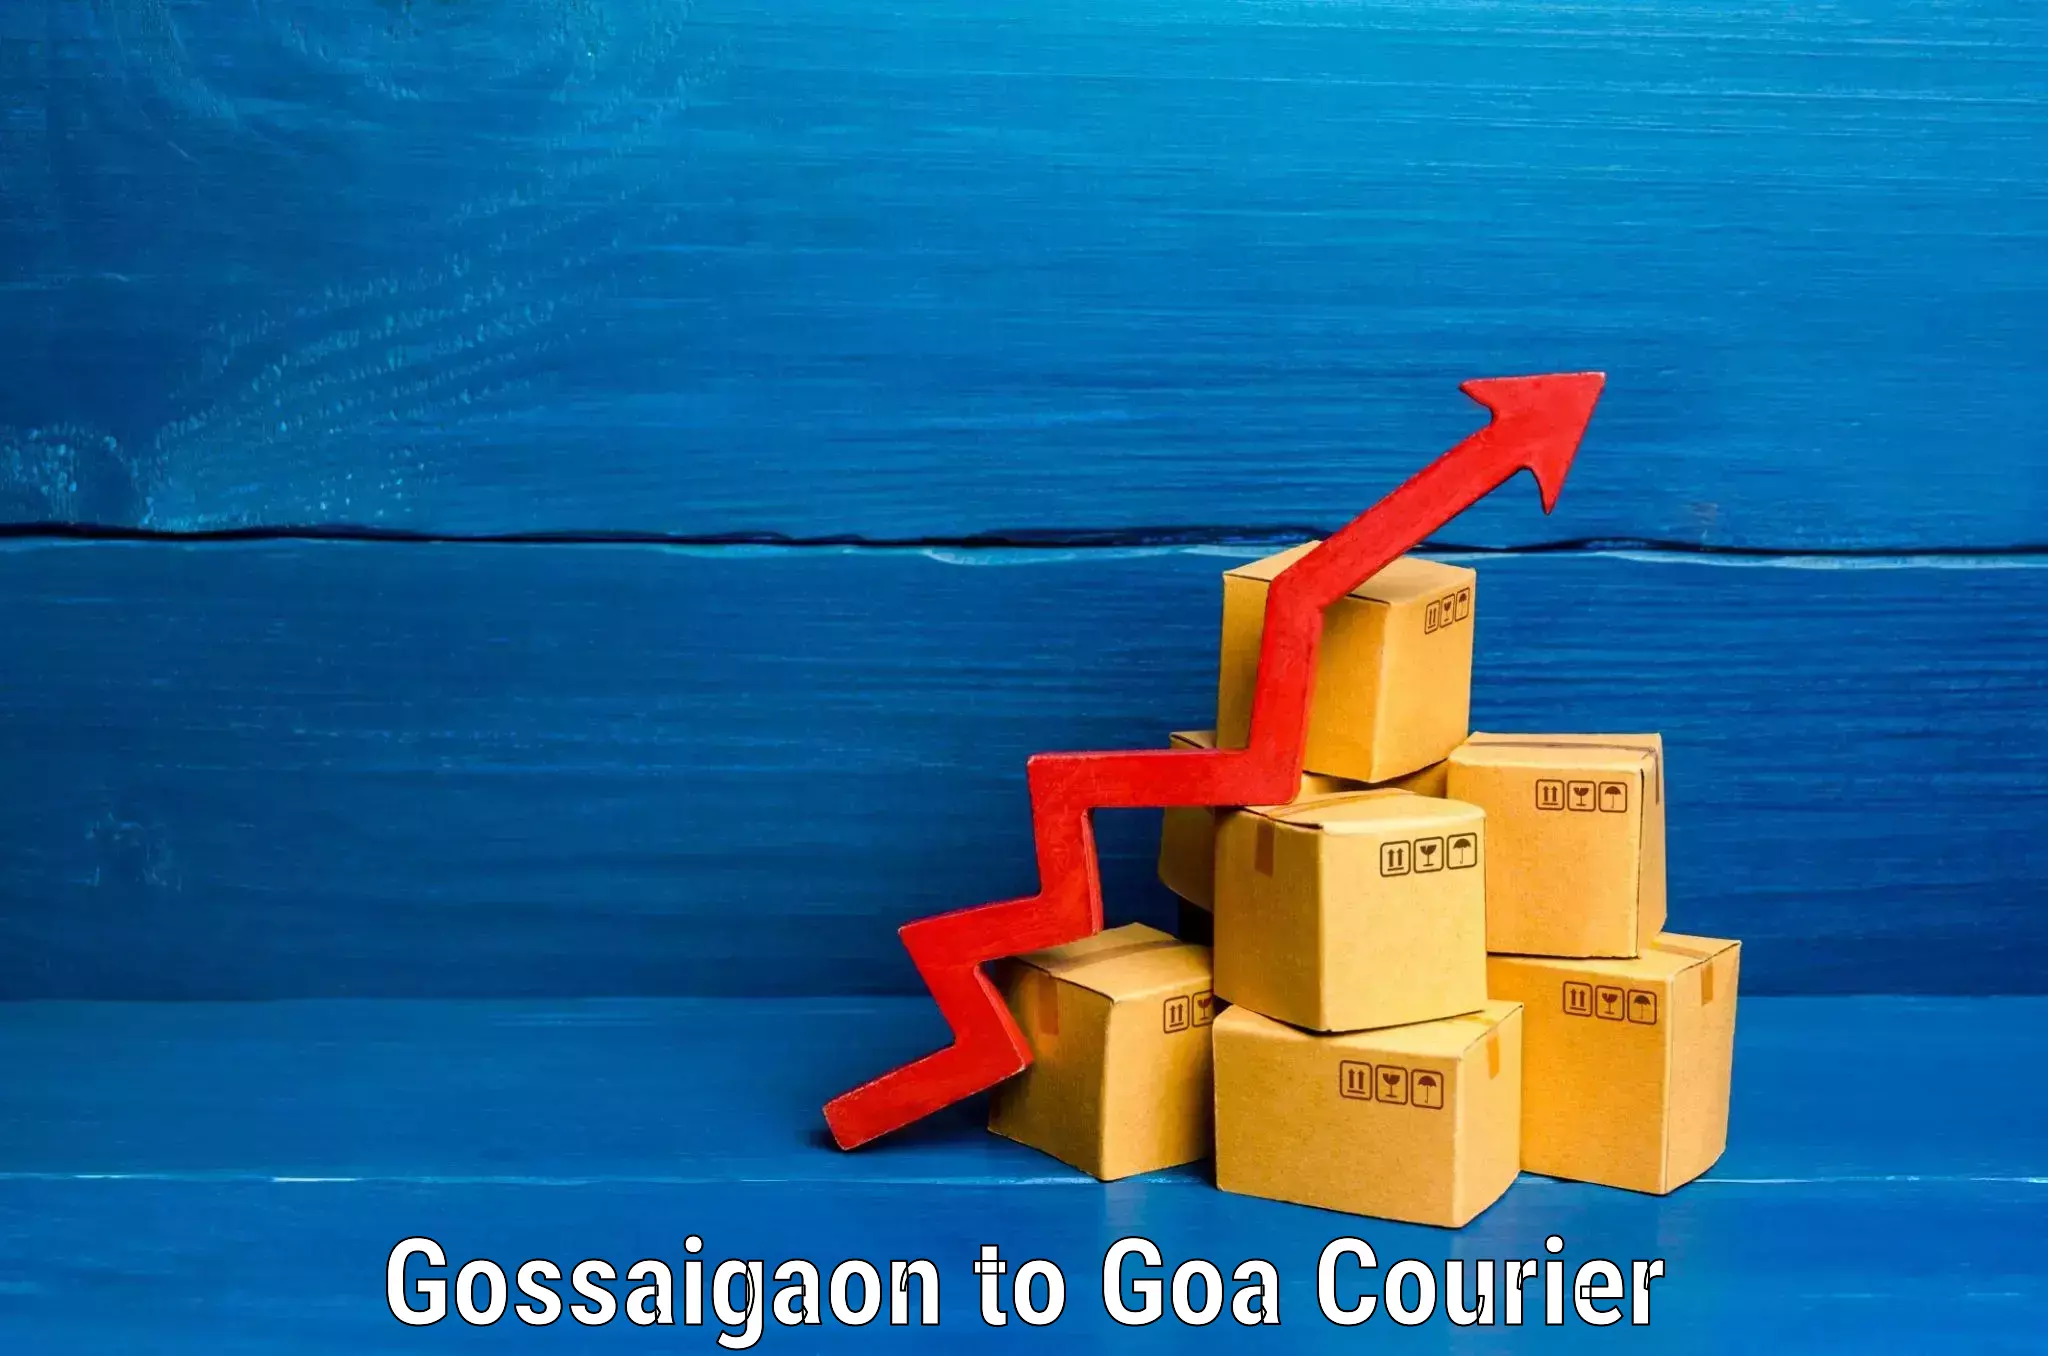 Same day luggage service Gossaigaon to Goa